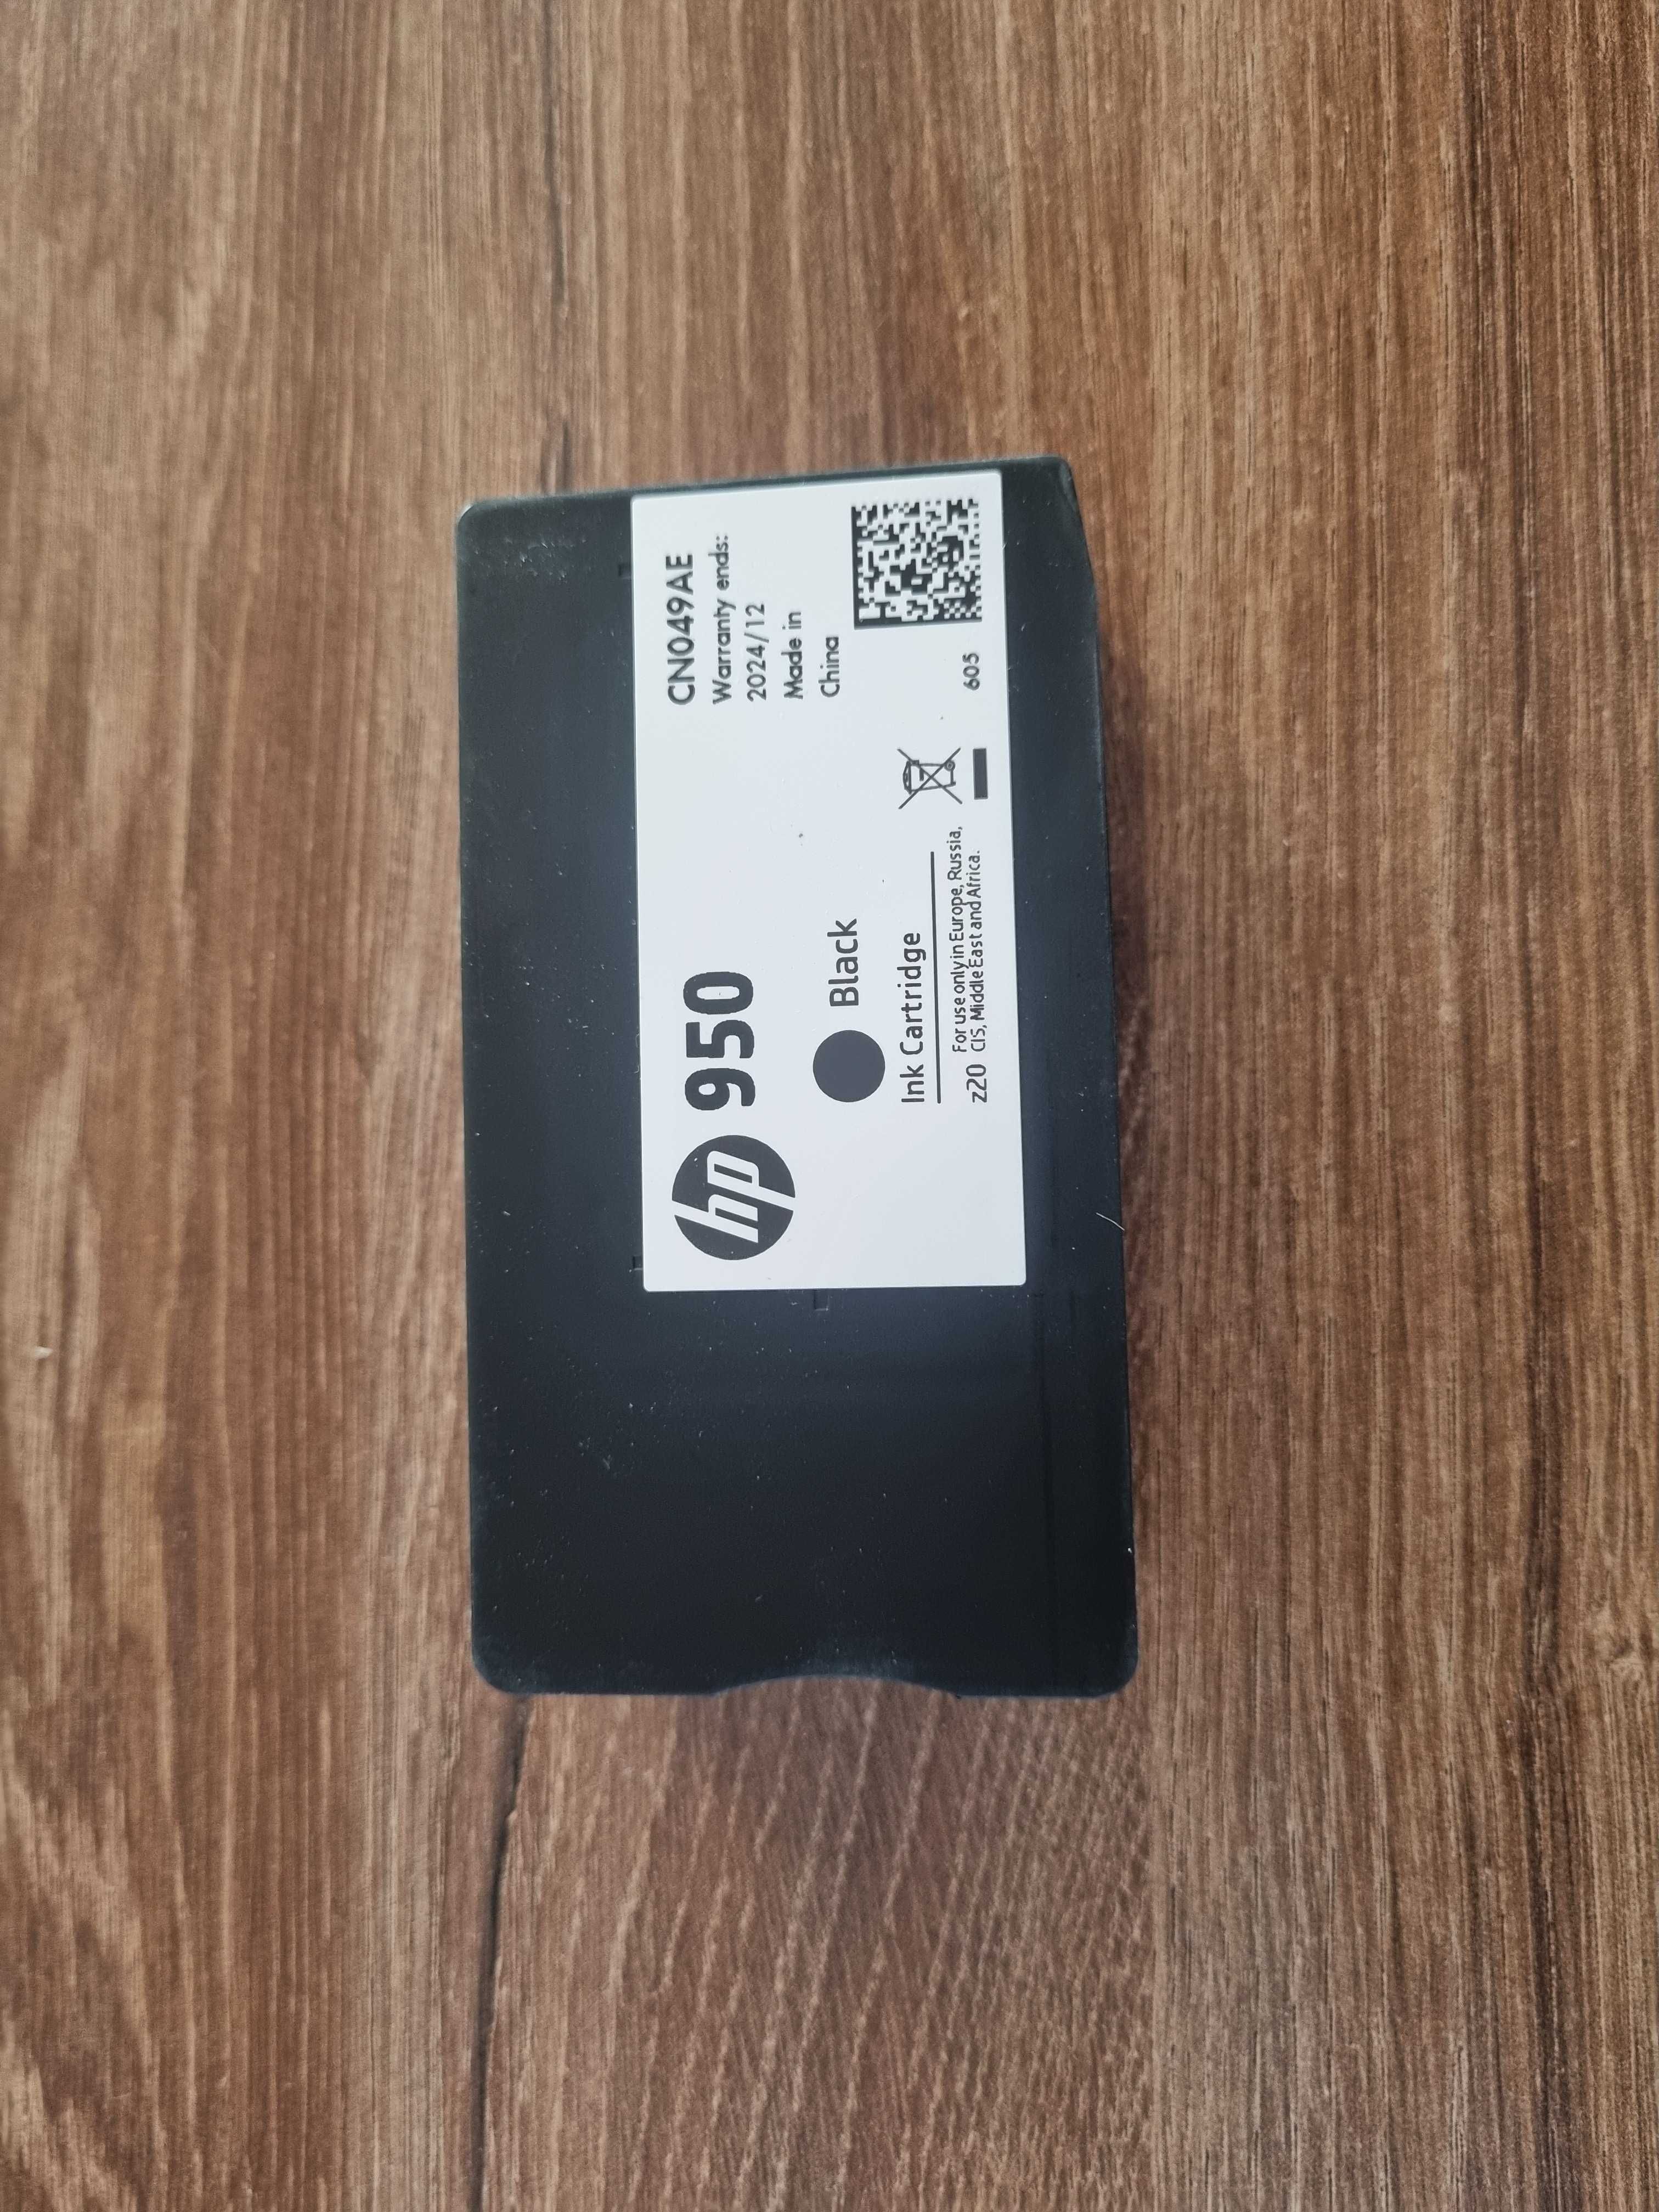 Tusz HP 950 (CN049AE) tusz czarny, oryginalny